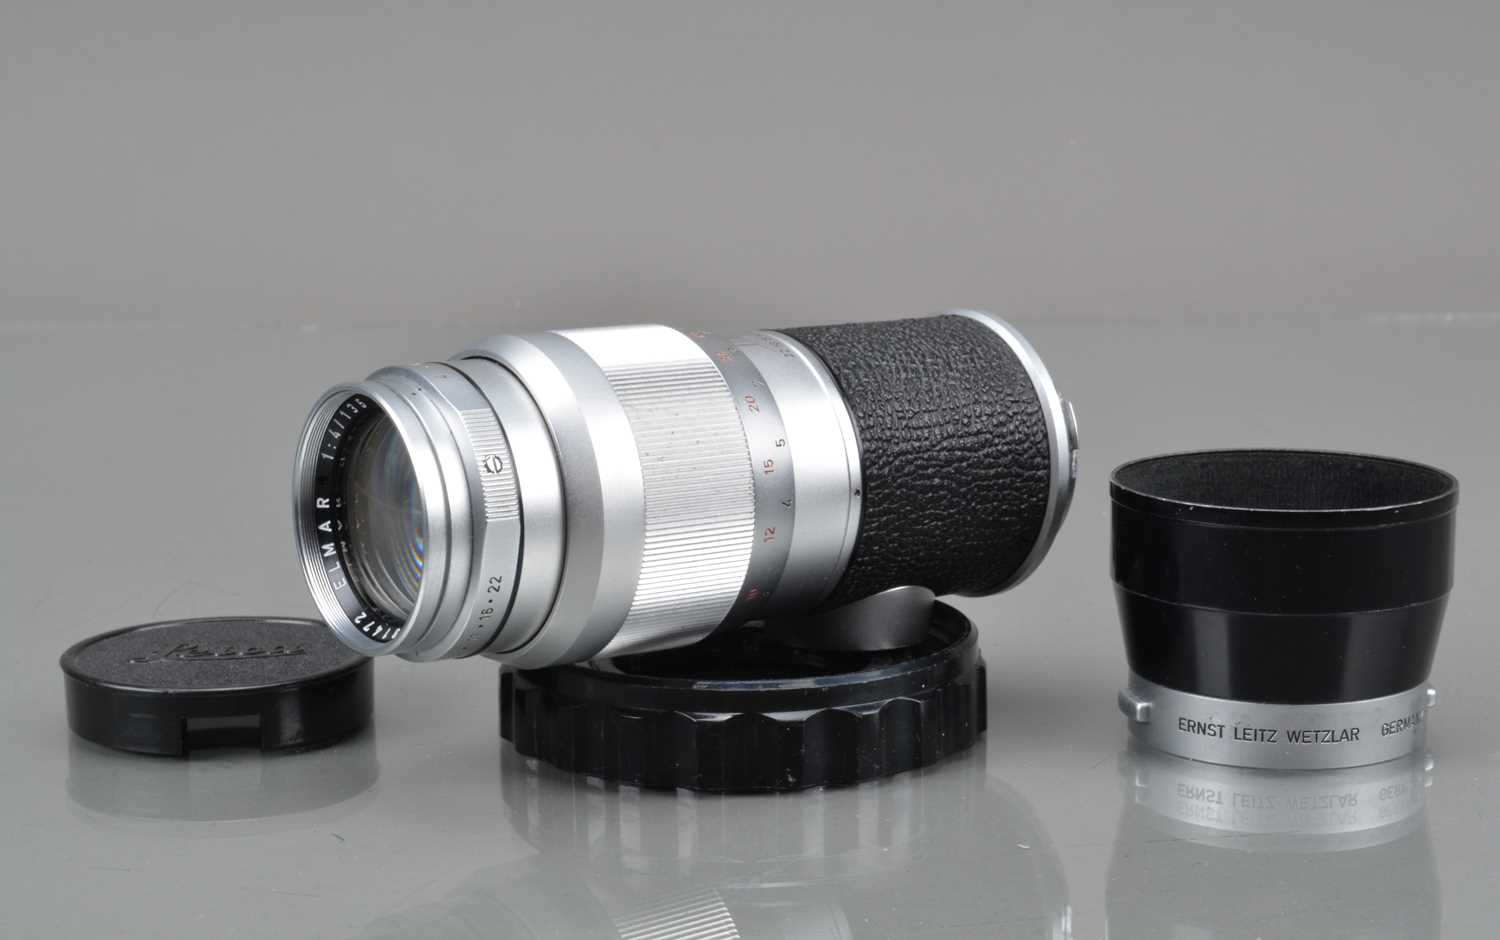 A Leitz Wetzlar 135mm f/4 Elmar Lens,